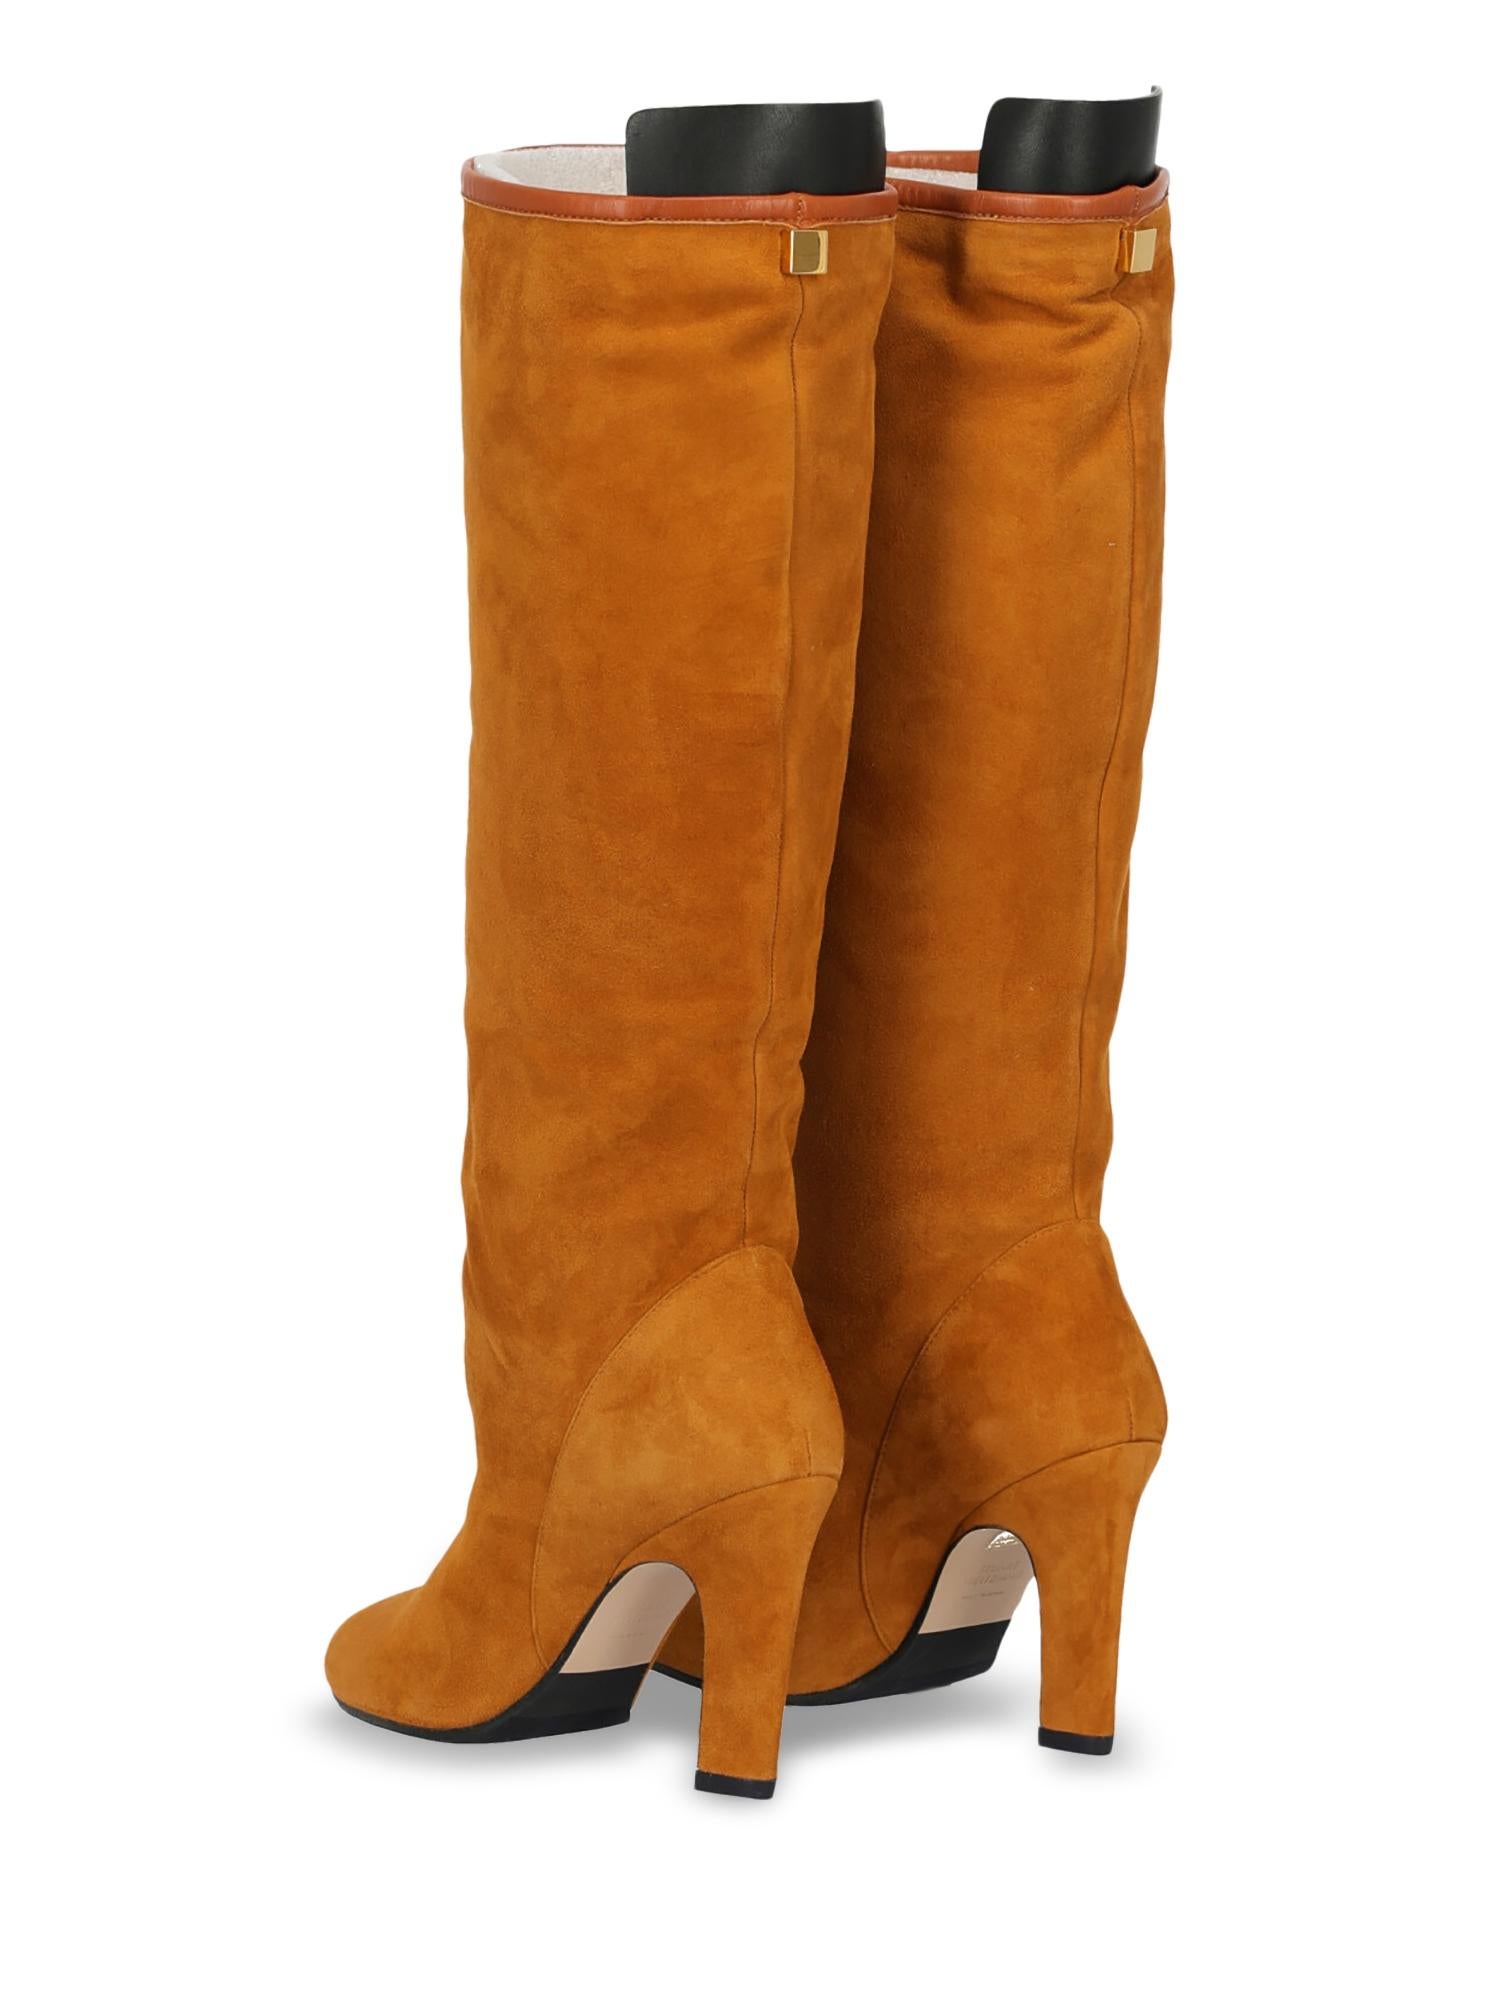 Orange Stuart Weitzman Woman Boots Camel Color Leather IT 35 For Sale